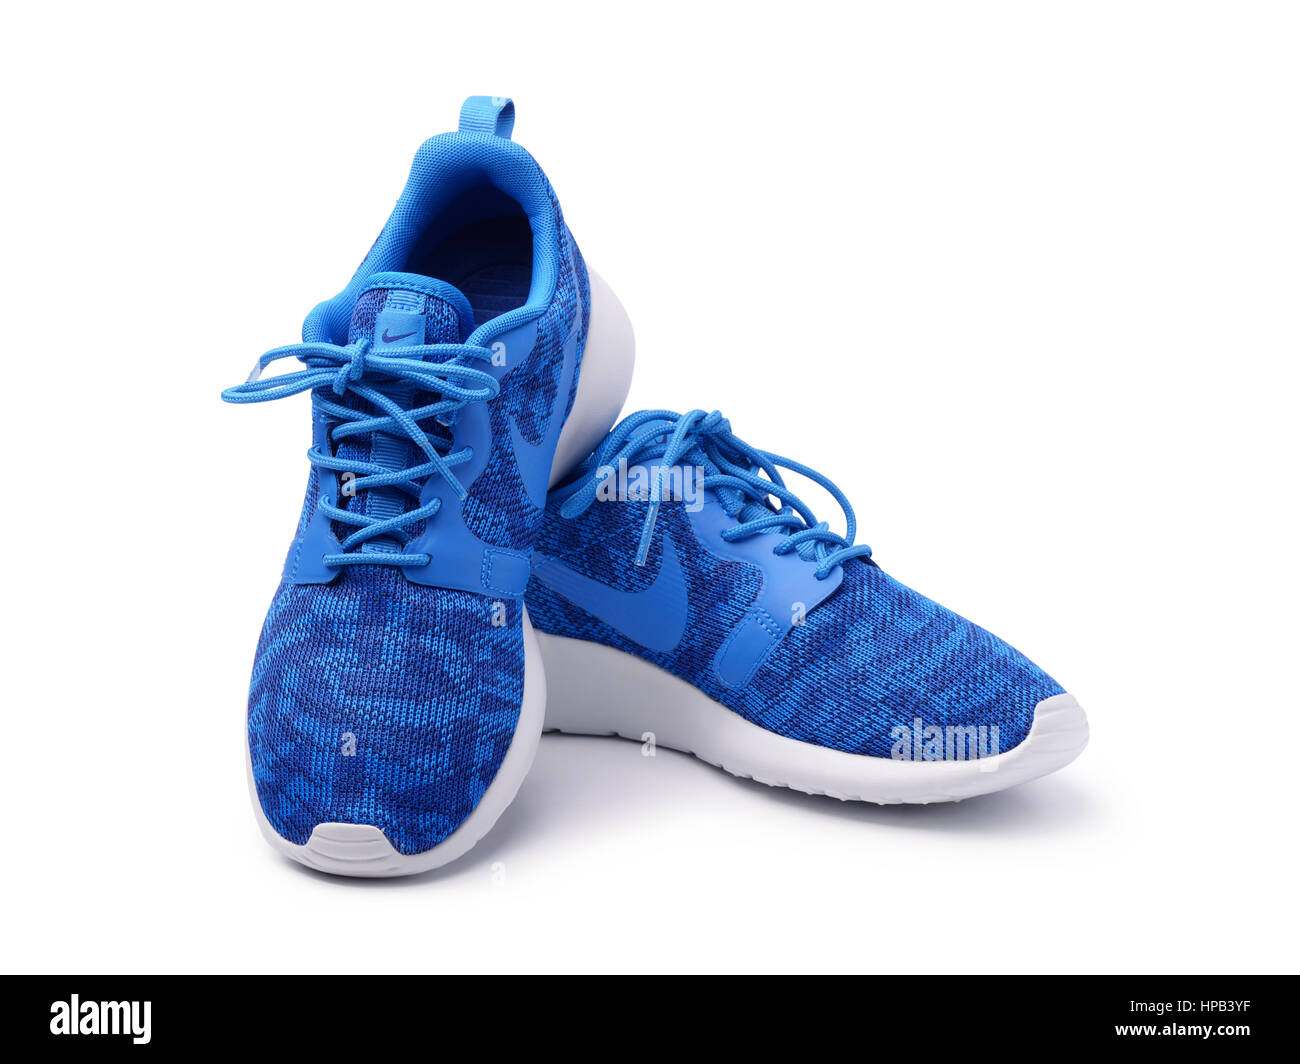 SAMARA, Rusia - Junio 8, 2015: mujer Nike zapatillas para correr,  entrenamiento, en gris y azul, mostrando el logo de Nike, a título  ilustrativo, la editorial Fotografía de stock - Alamy